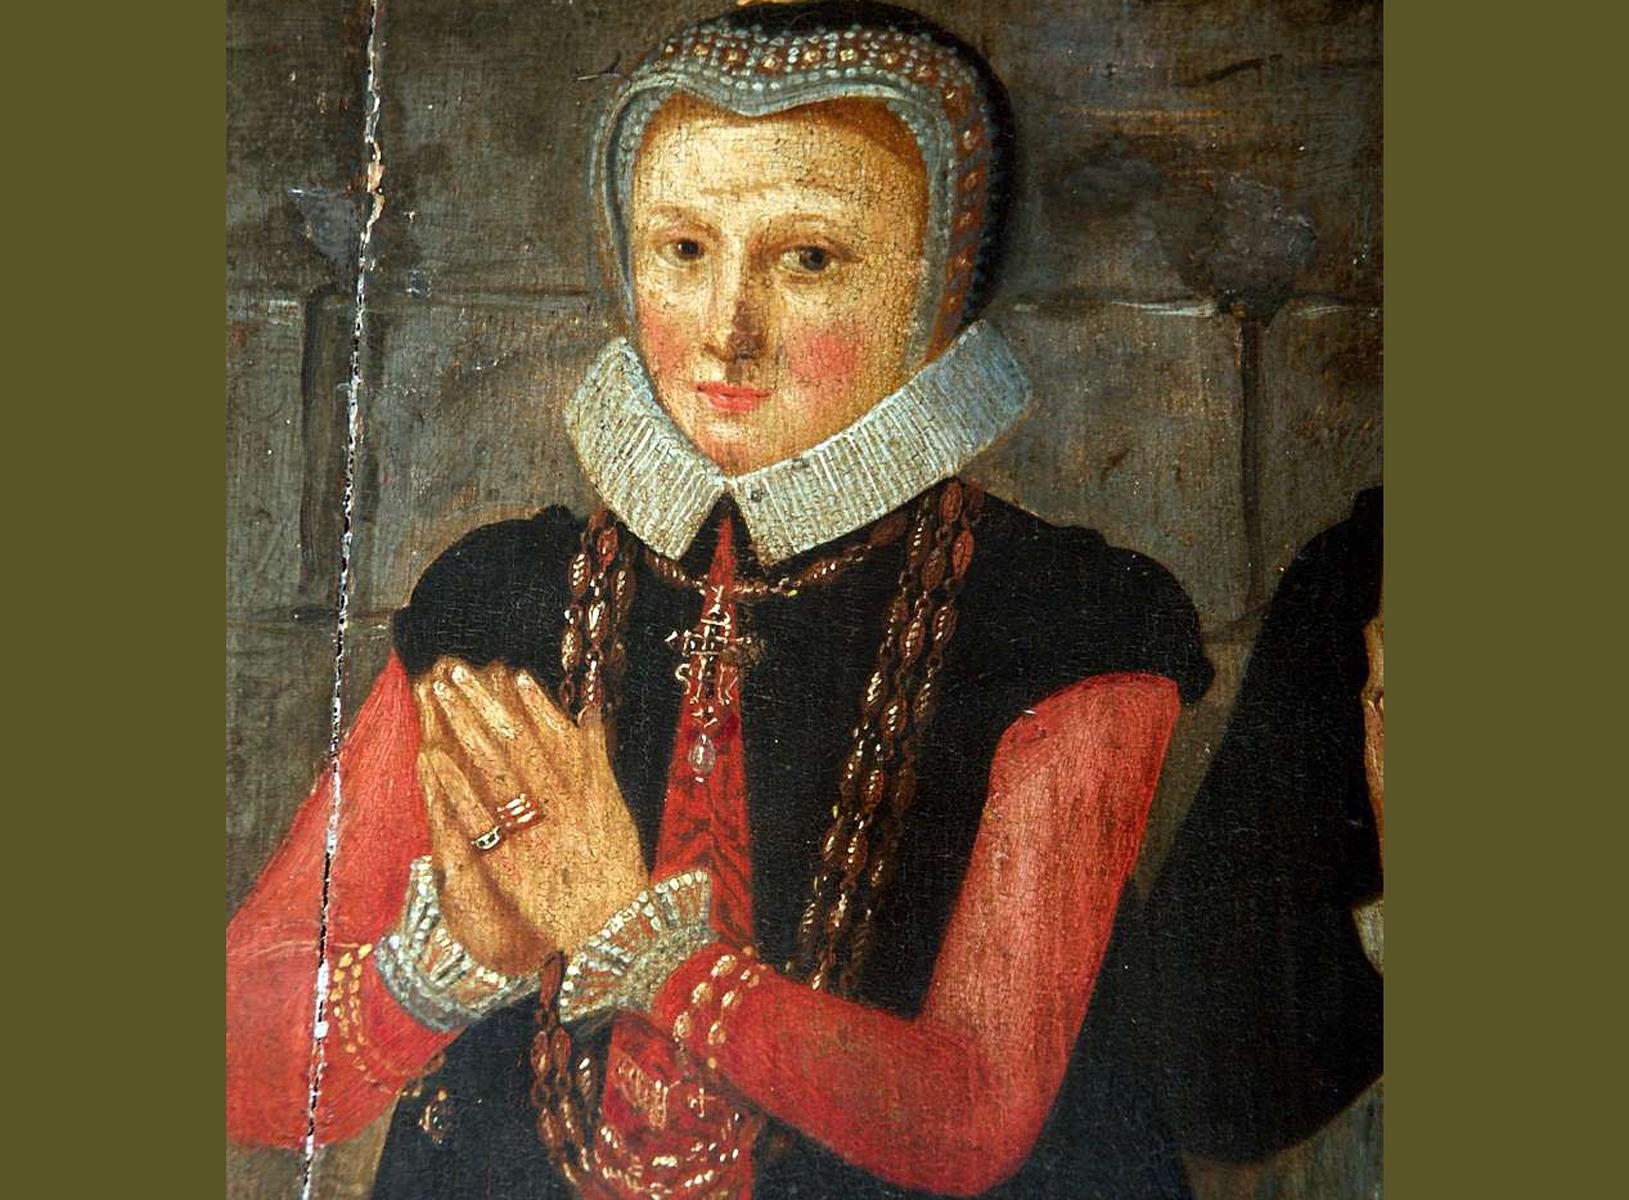 Målning. Detaljbild av kvinna med knäppta händer. Dräkten är röd med svart överkjortel och dekorerad mössa.